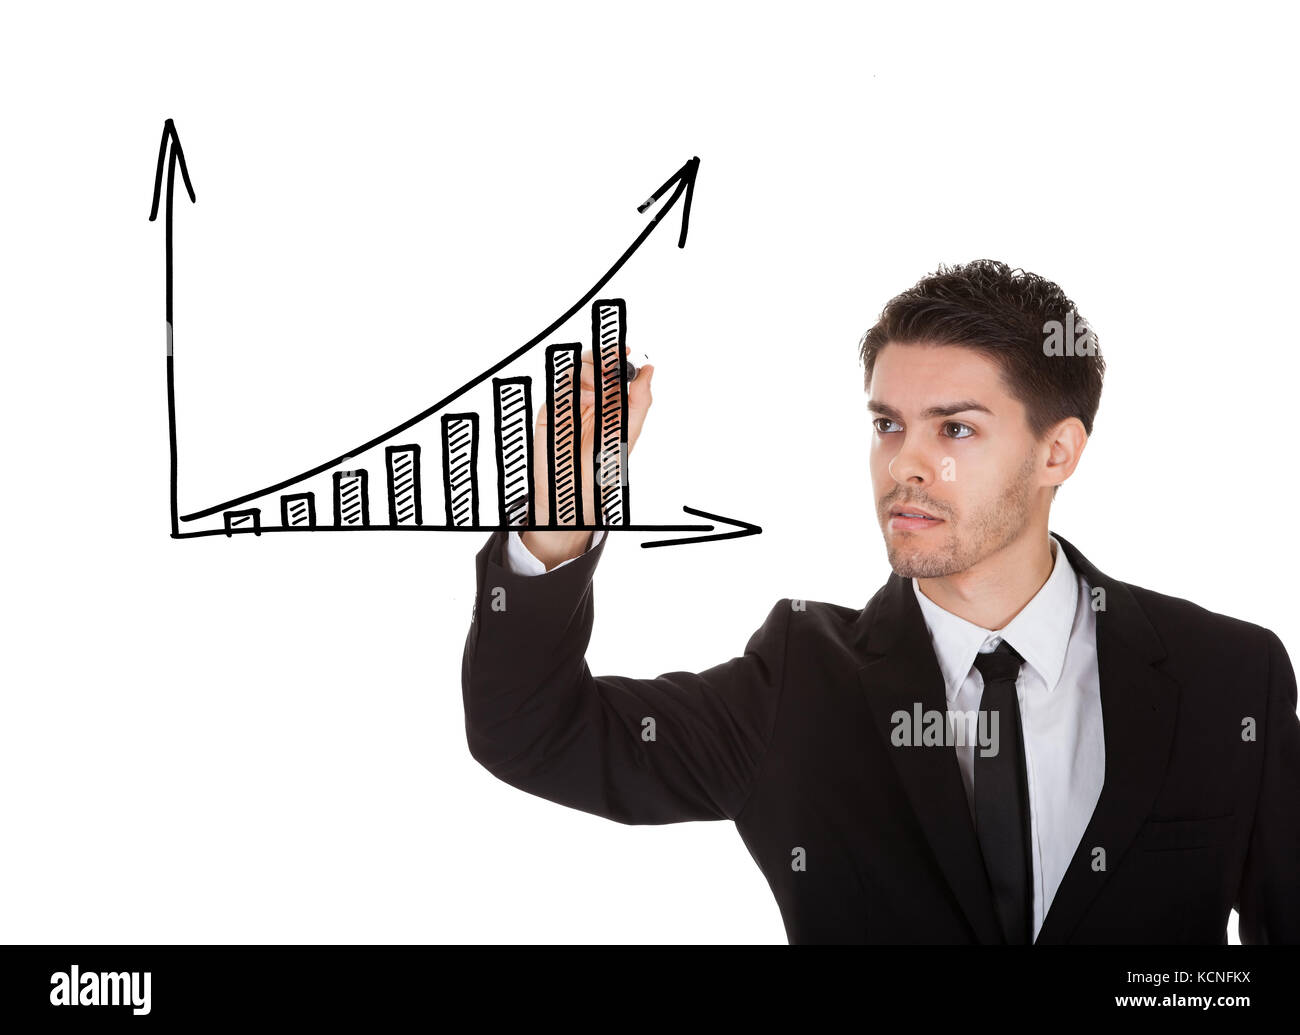 Man holding marker écrit de la croissance des bénéfices graphique sur écran blanc Banque D'Images